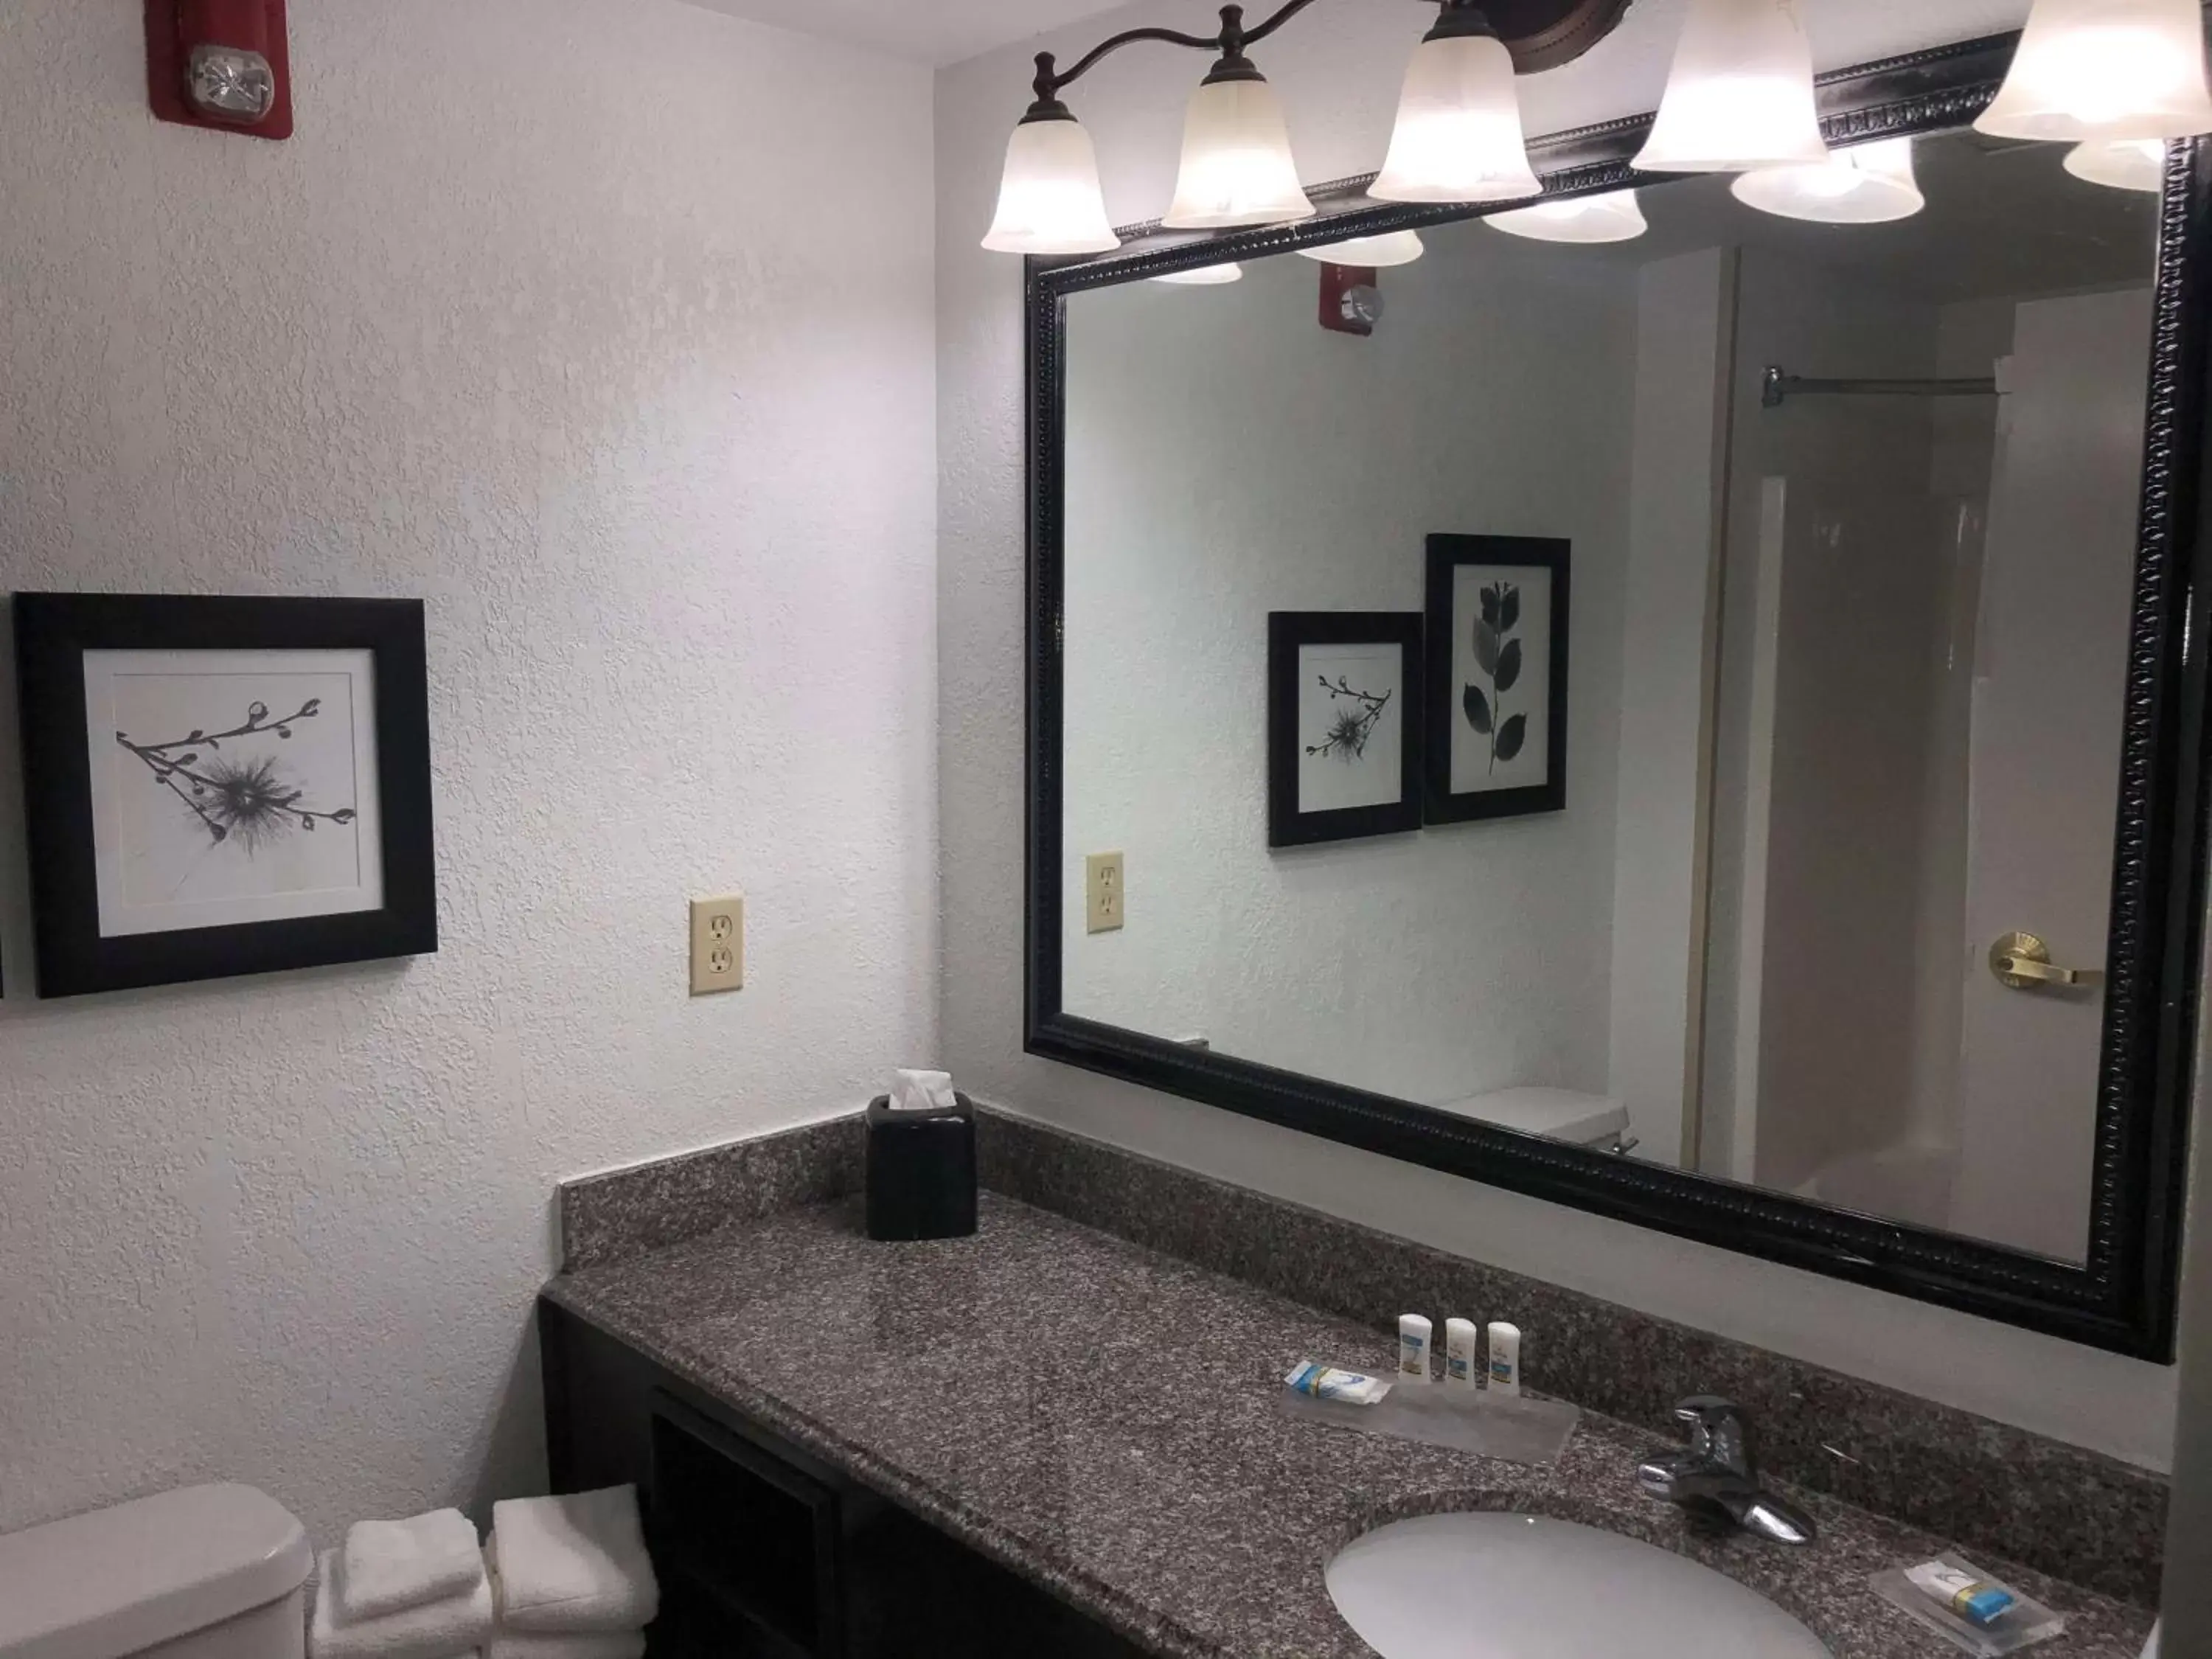 Bathroom in Country Inn & Suites by Radisson, Biloxi-Ocean Springs, MS